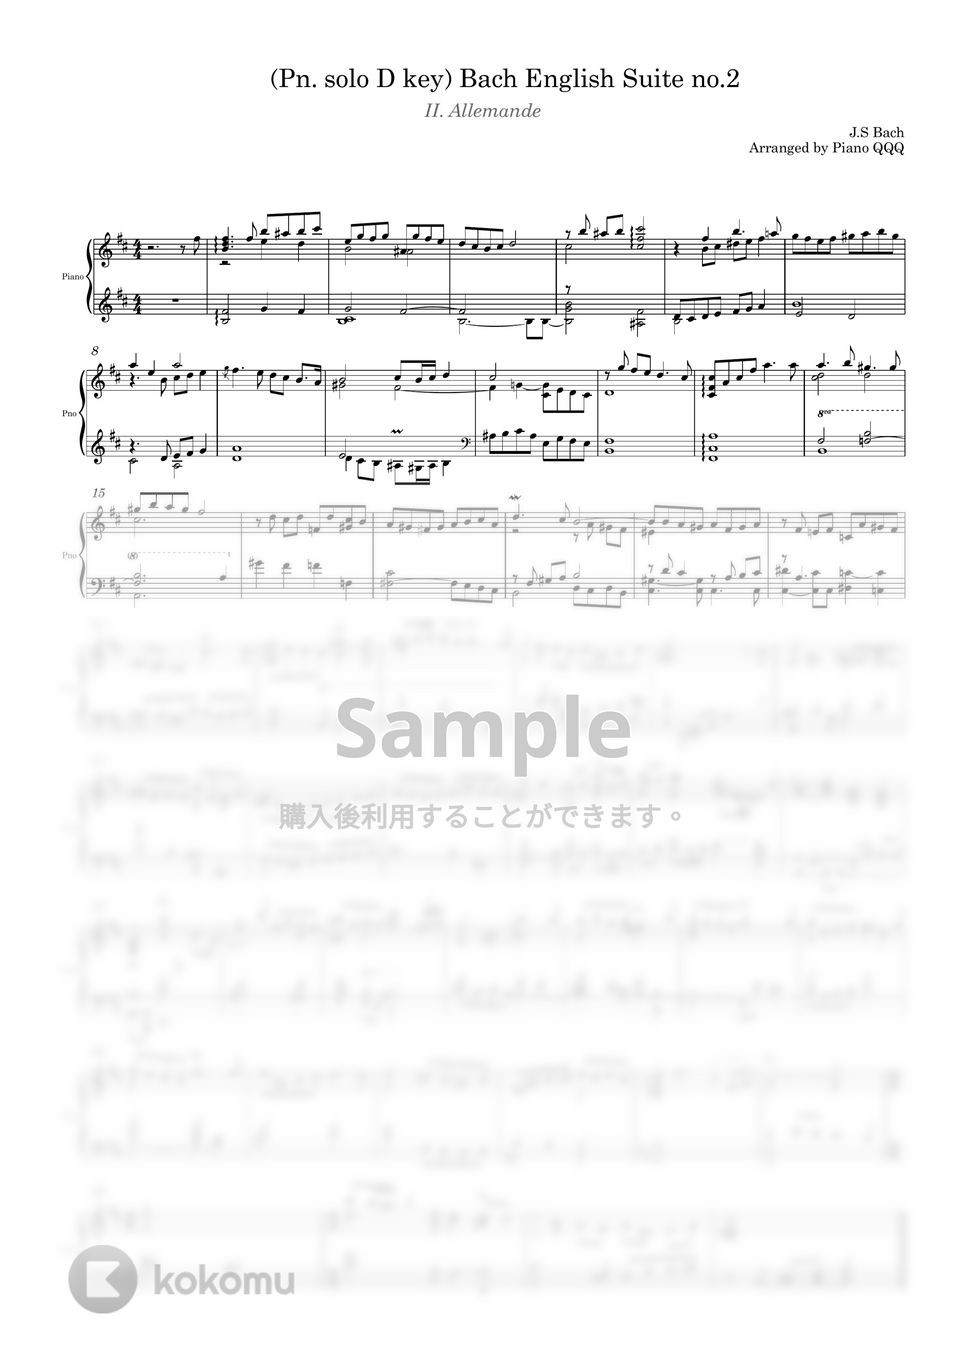 Bach - バッハ イギリス組曲第2番 アルマンデ (ピアノソロ) by Piano QQQ